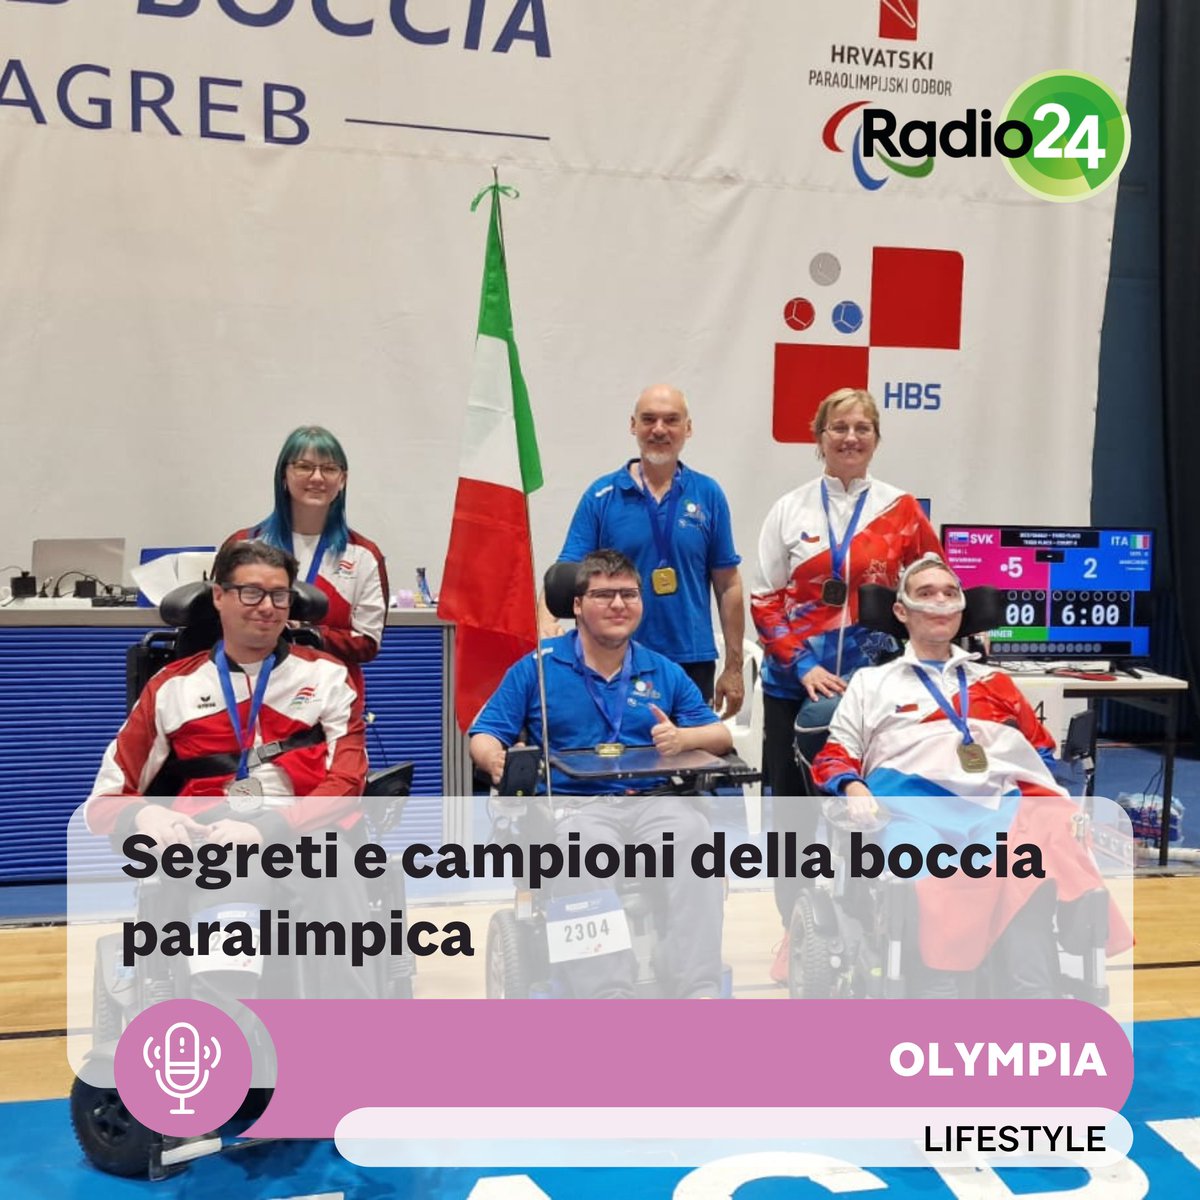 🏅La boccia paralimpica è uno sport in crescita in Italia. Scopri di più sulla disciplina e sugli atleti italiani che stanno facendo la differenza nel mondo della boccia paralimpica, ascolta Olympia: tinyurl.com/r3buap7j #BocciaParalimpica #Sport #Inclusione #Italia #Radio24